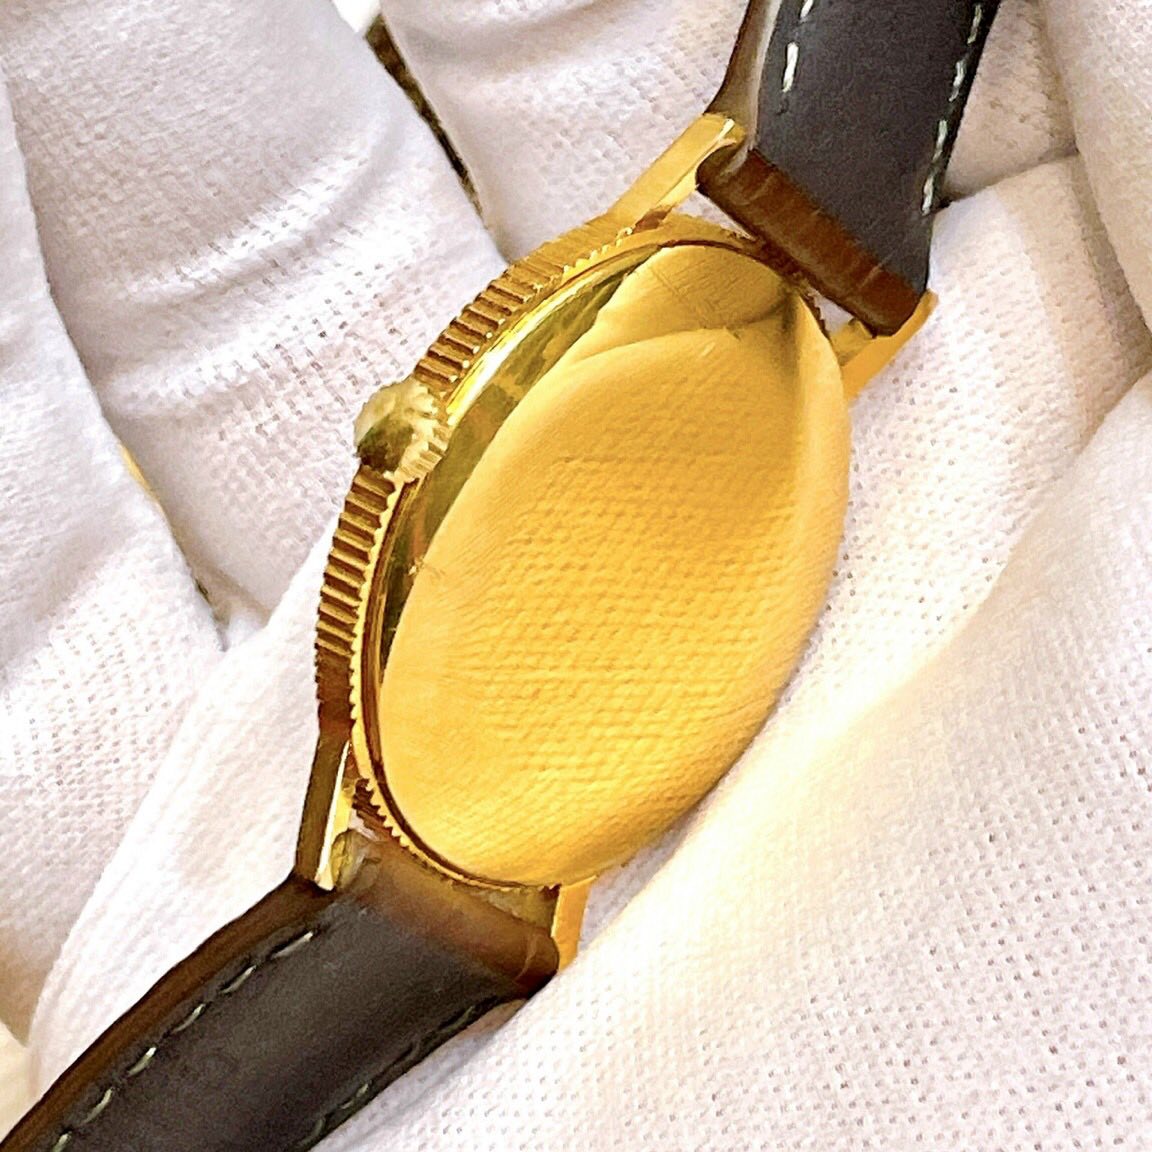 Đồng hồ cổ Tressa lên dây đồng tiền siêu mỏng chính hãng Thụy Sĩ